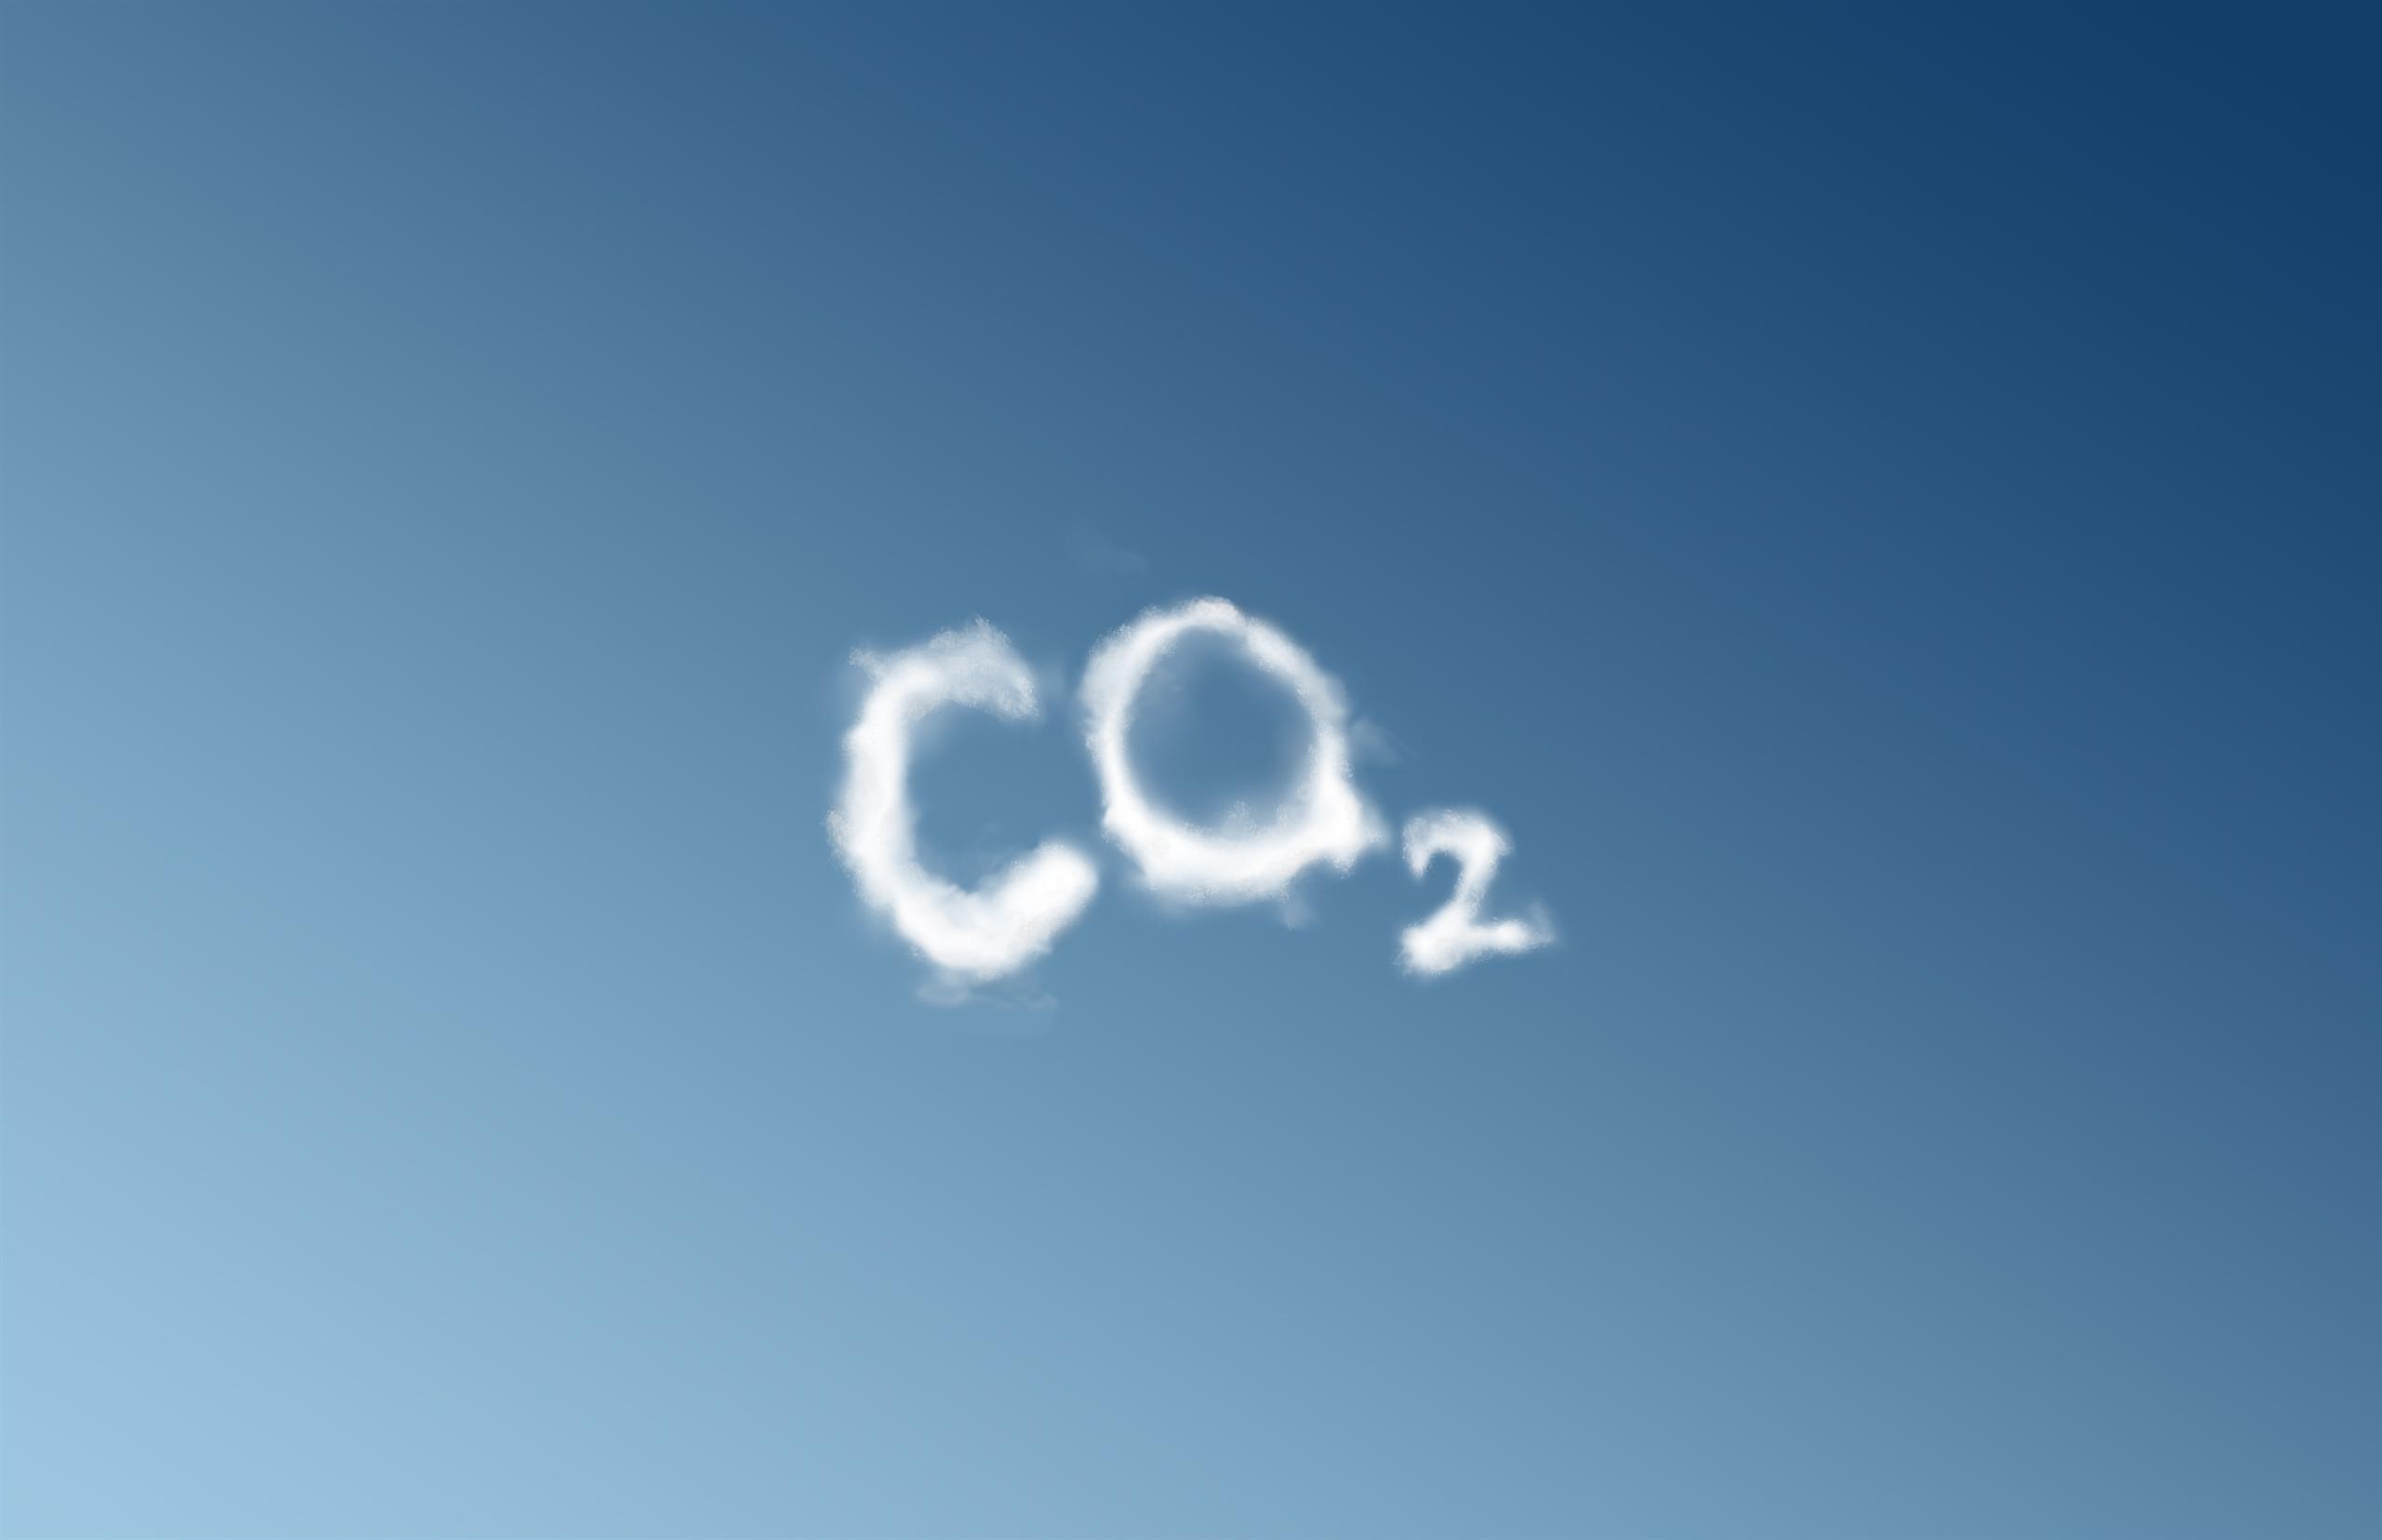 CO2 written in the sky